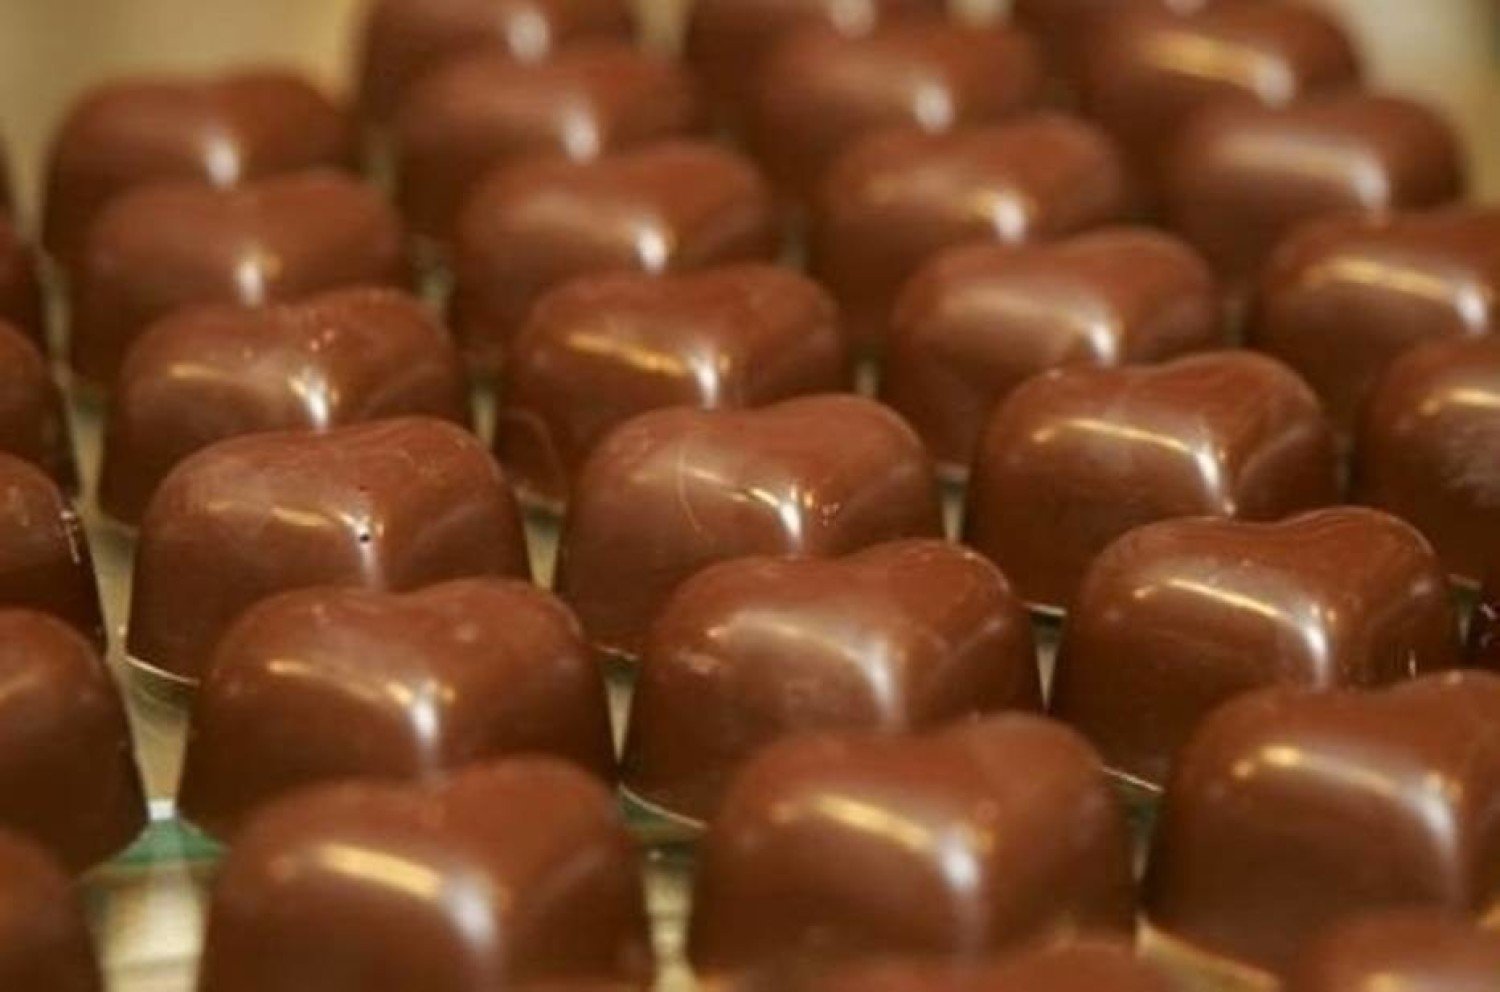 Fabryka czekolady w Nowej Soli przyjmie do pracy ponad 100 osób! To kolejna  ważna inwestycja w naszym mieście | Nowa Sól Nasze Miasto